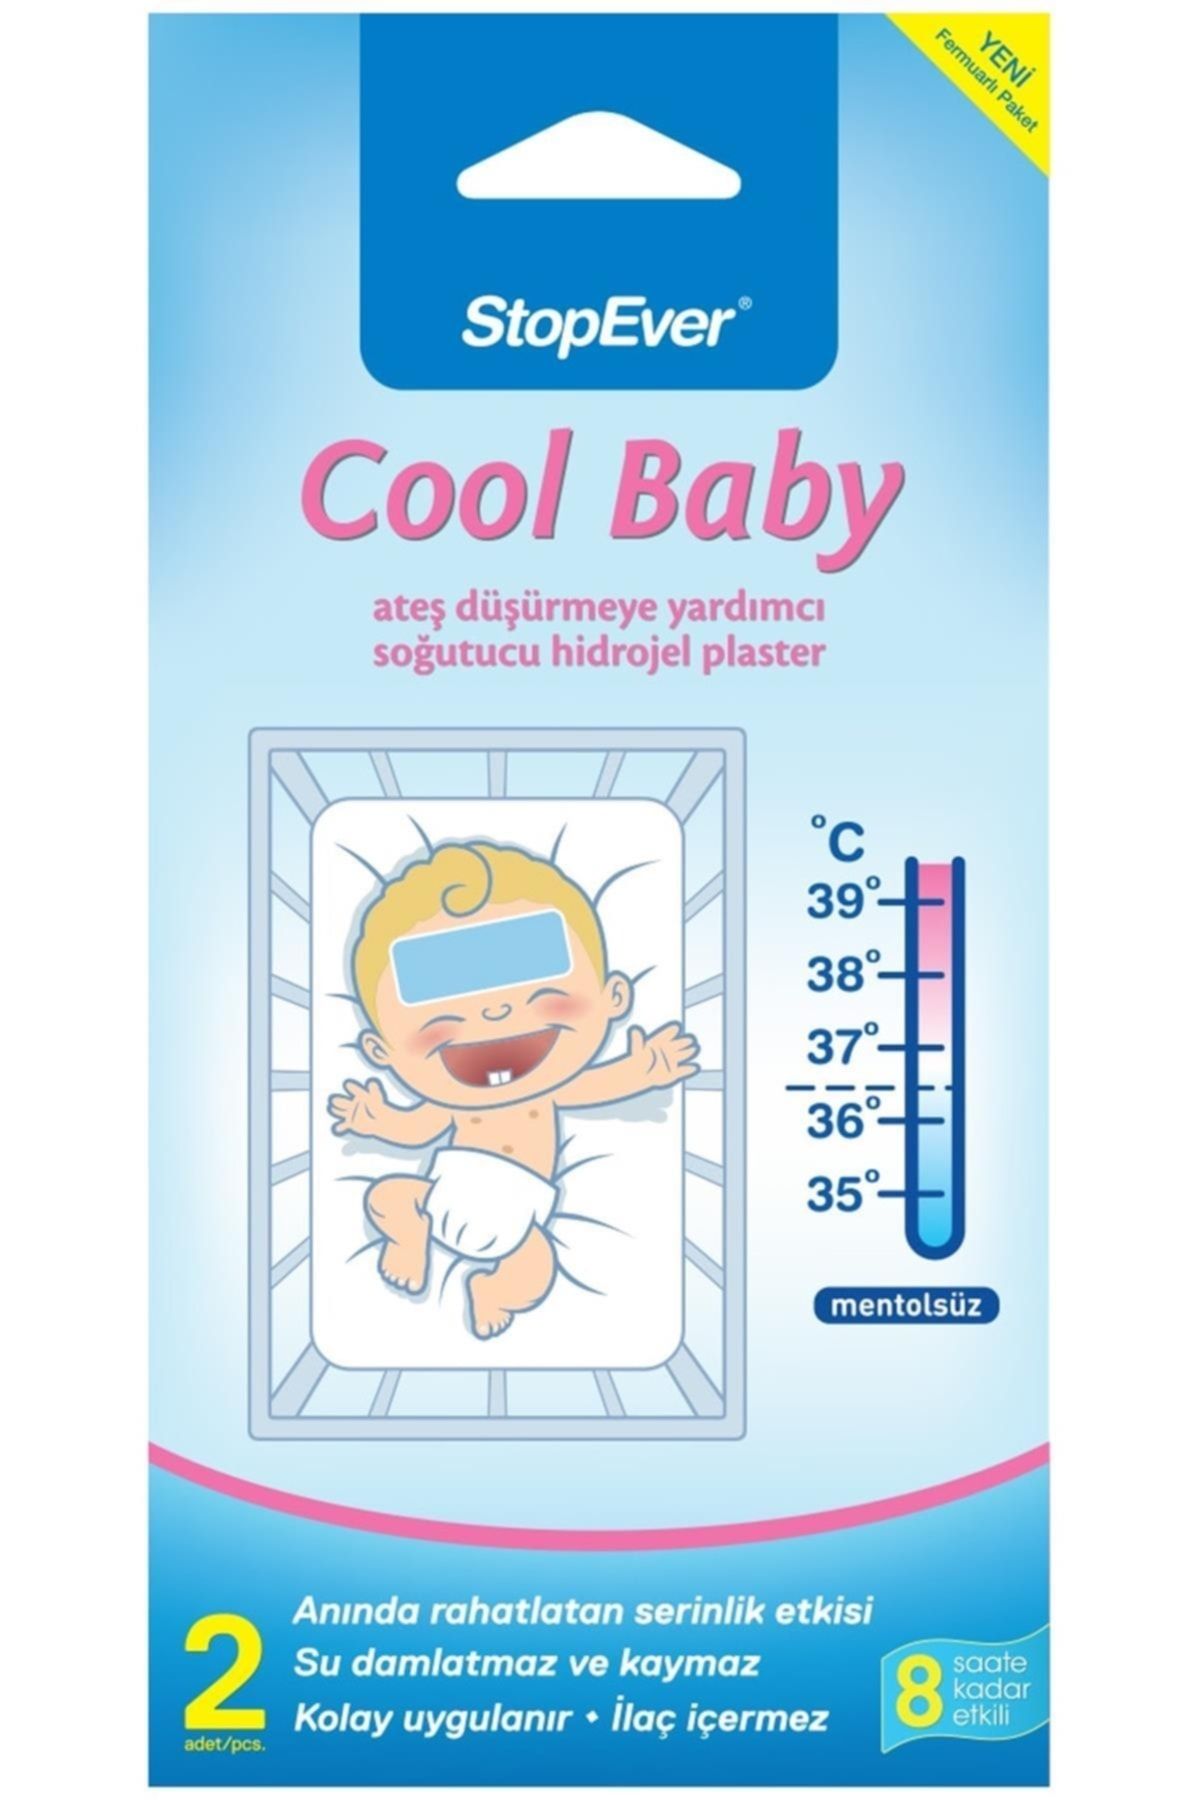 StopEver Marka: Cool Baby Ateş Düşürmeye Yardımcı Soğutucu Hidrojel Plaster Kategori: Diğer Sağlık